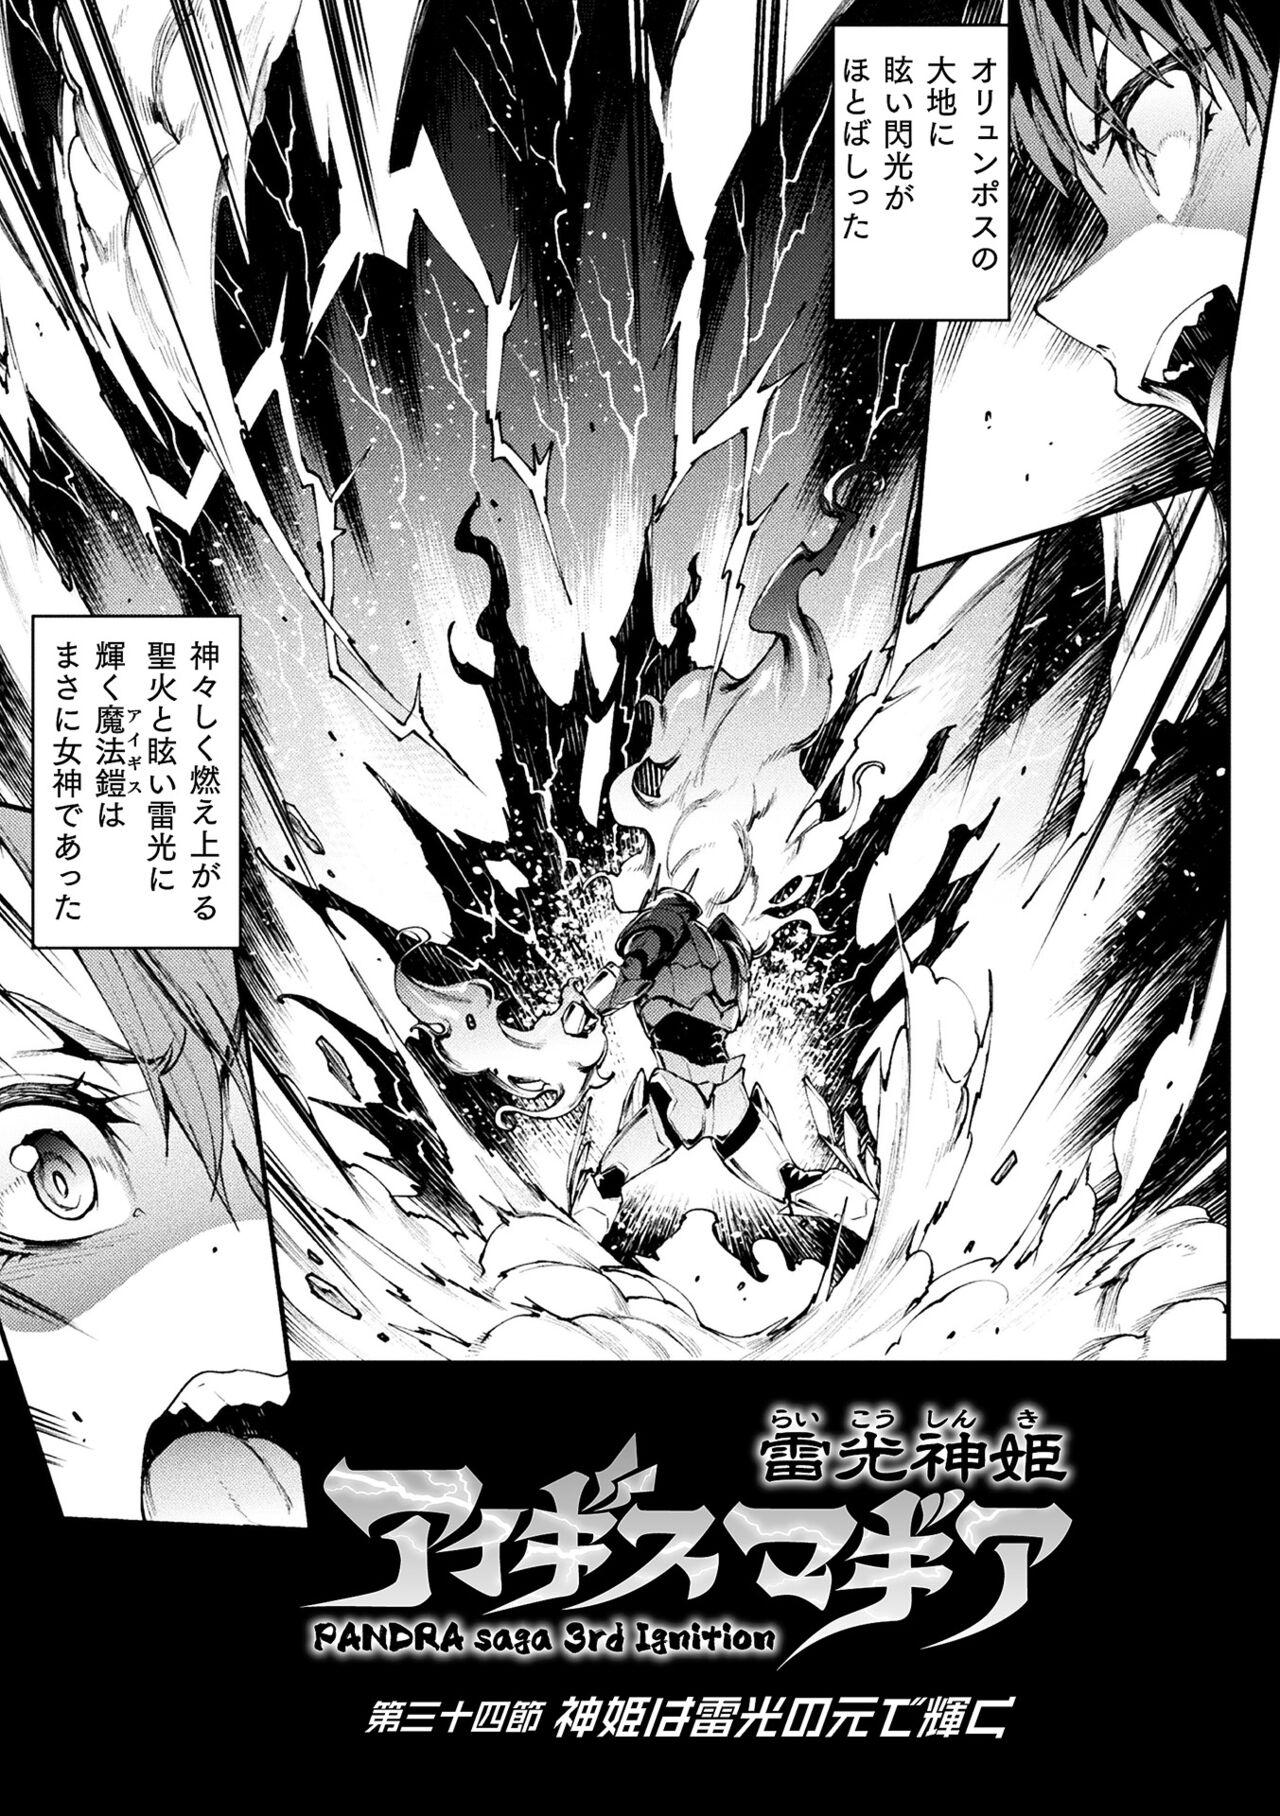 [Erect Sawaru] Raikou Shinki Igis Magia III -PANDRA saga 3rd ignition- 4 [Digital] 204